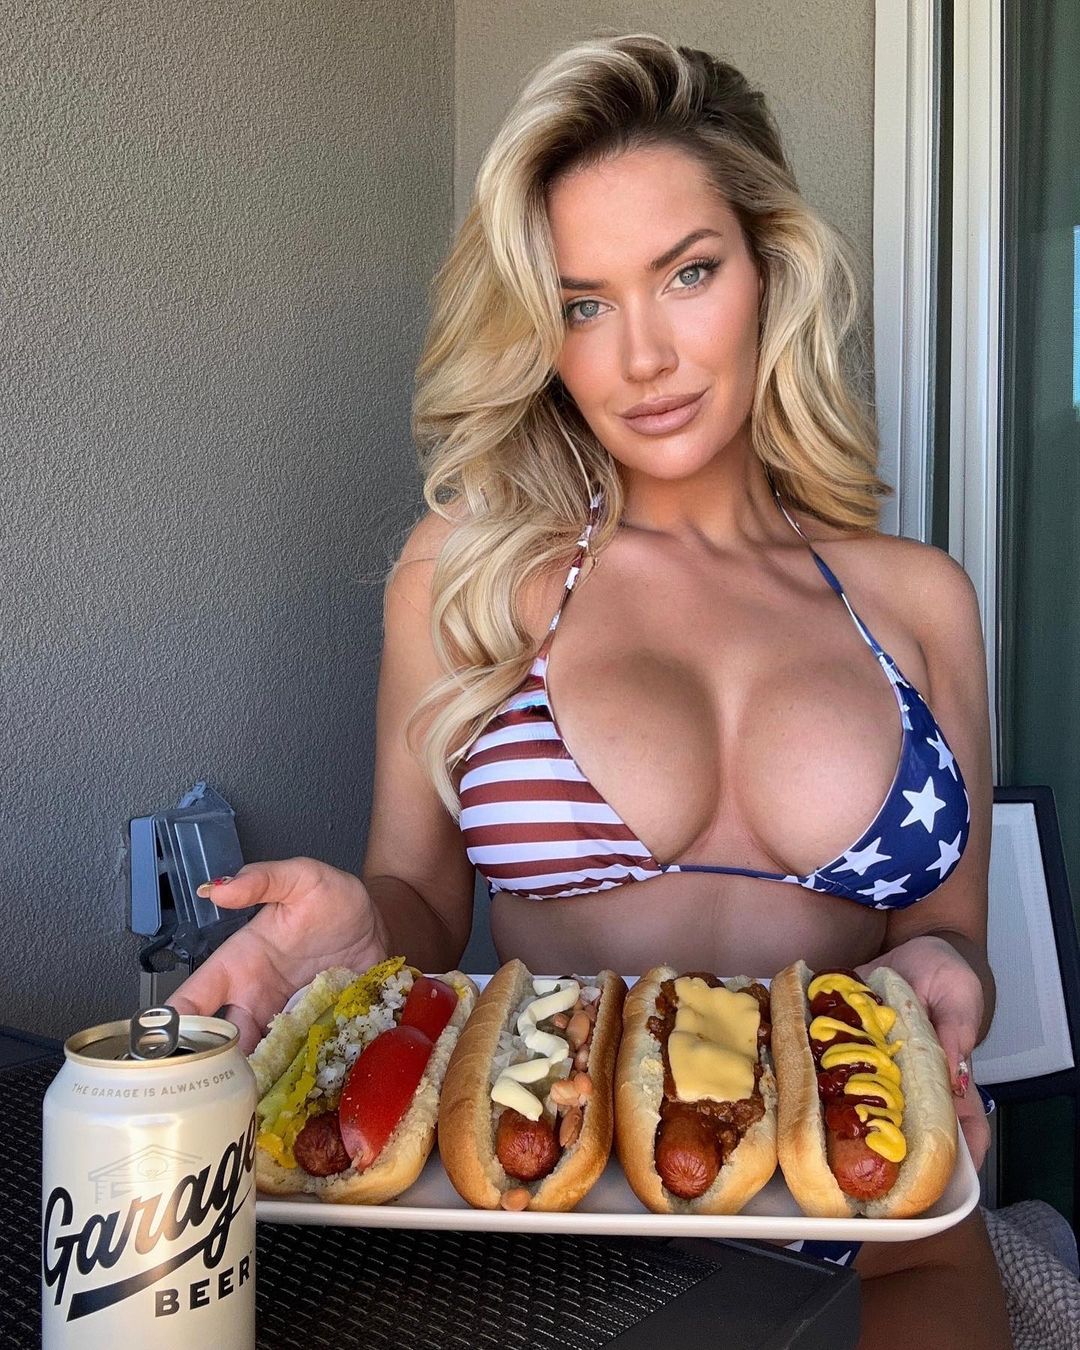 Paige feierte die US Open im Stars-and-Stripes-Bikini und aß Hot Dogs